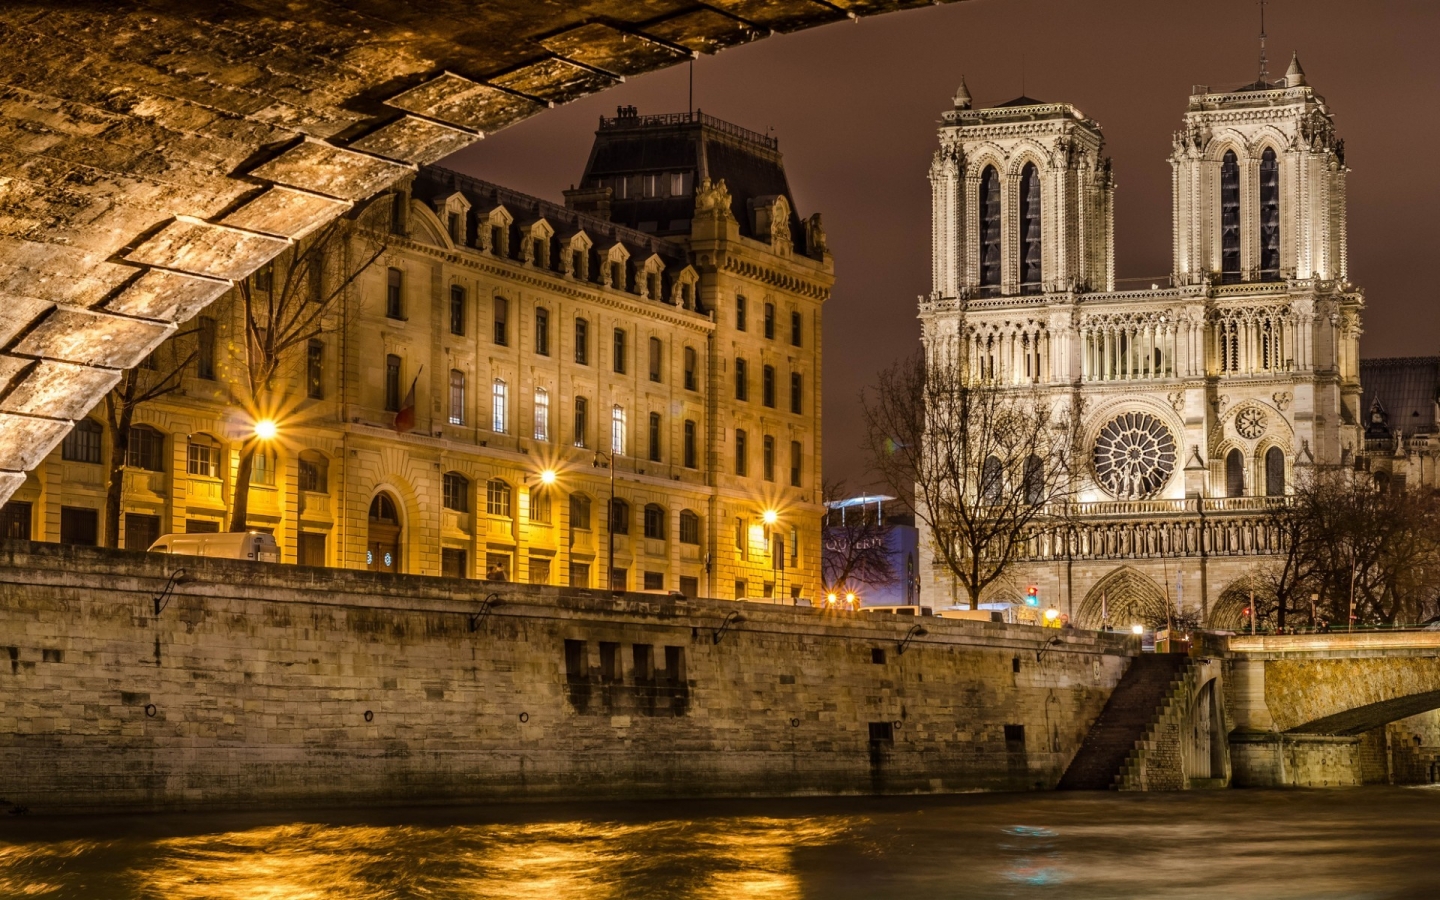 Notre Dame de Paris Front View for 1440 x 900 widescreen resolution